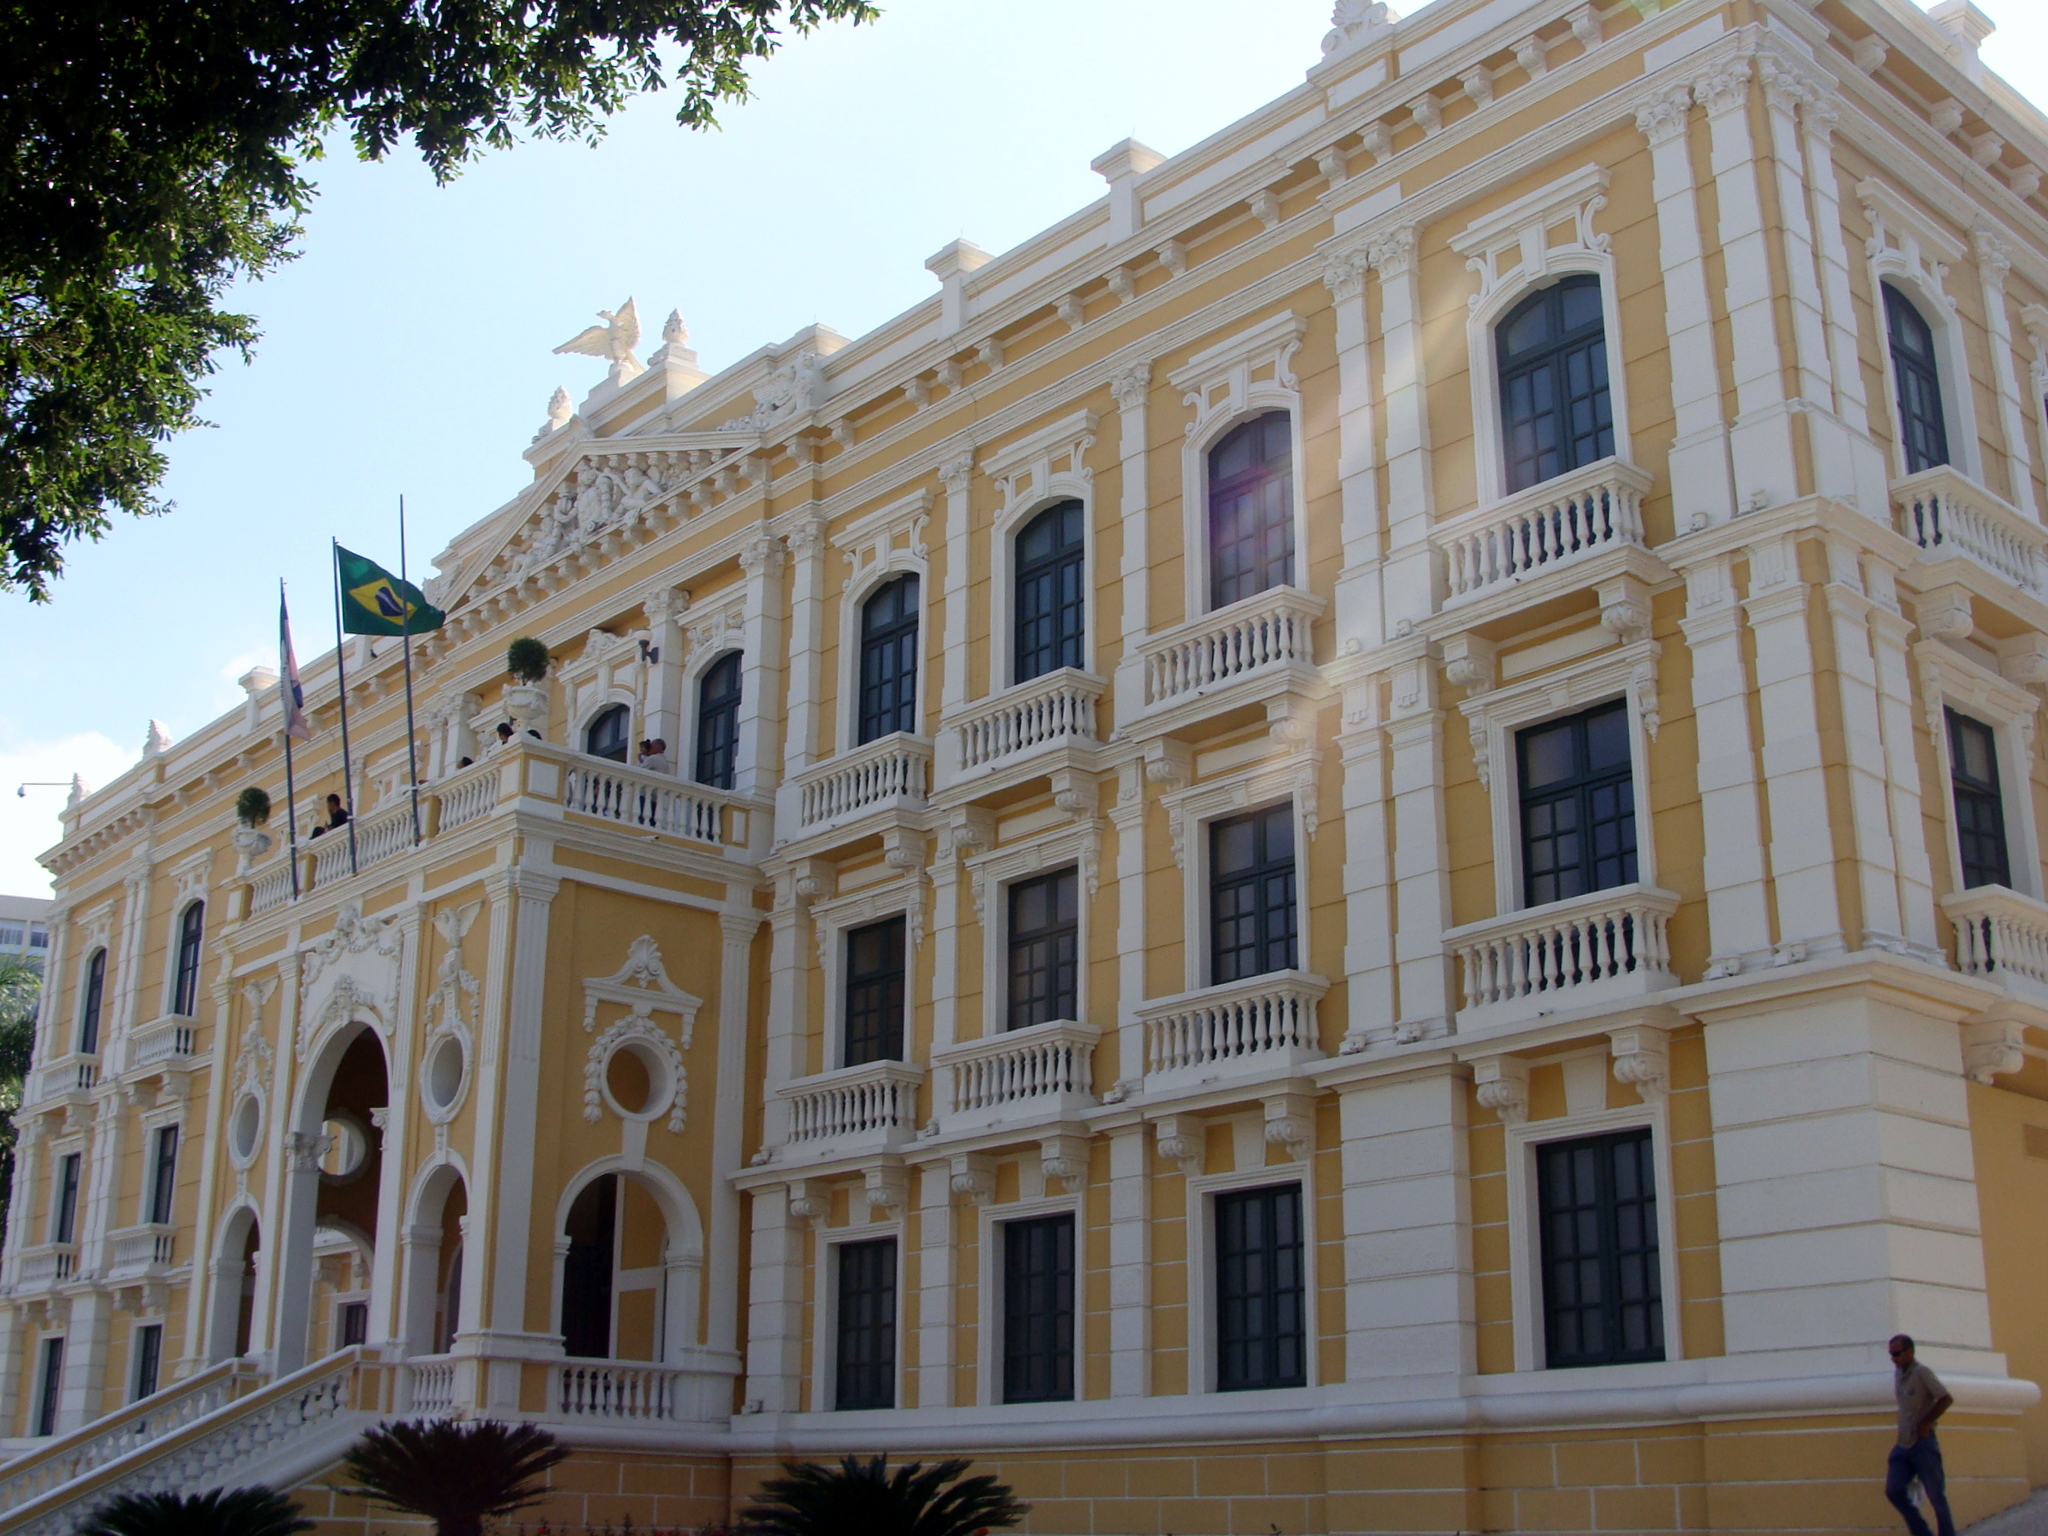 A maior novidade do turismo em Vitória: visita guiada ao Palácio Anchieta